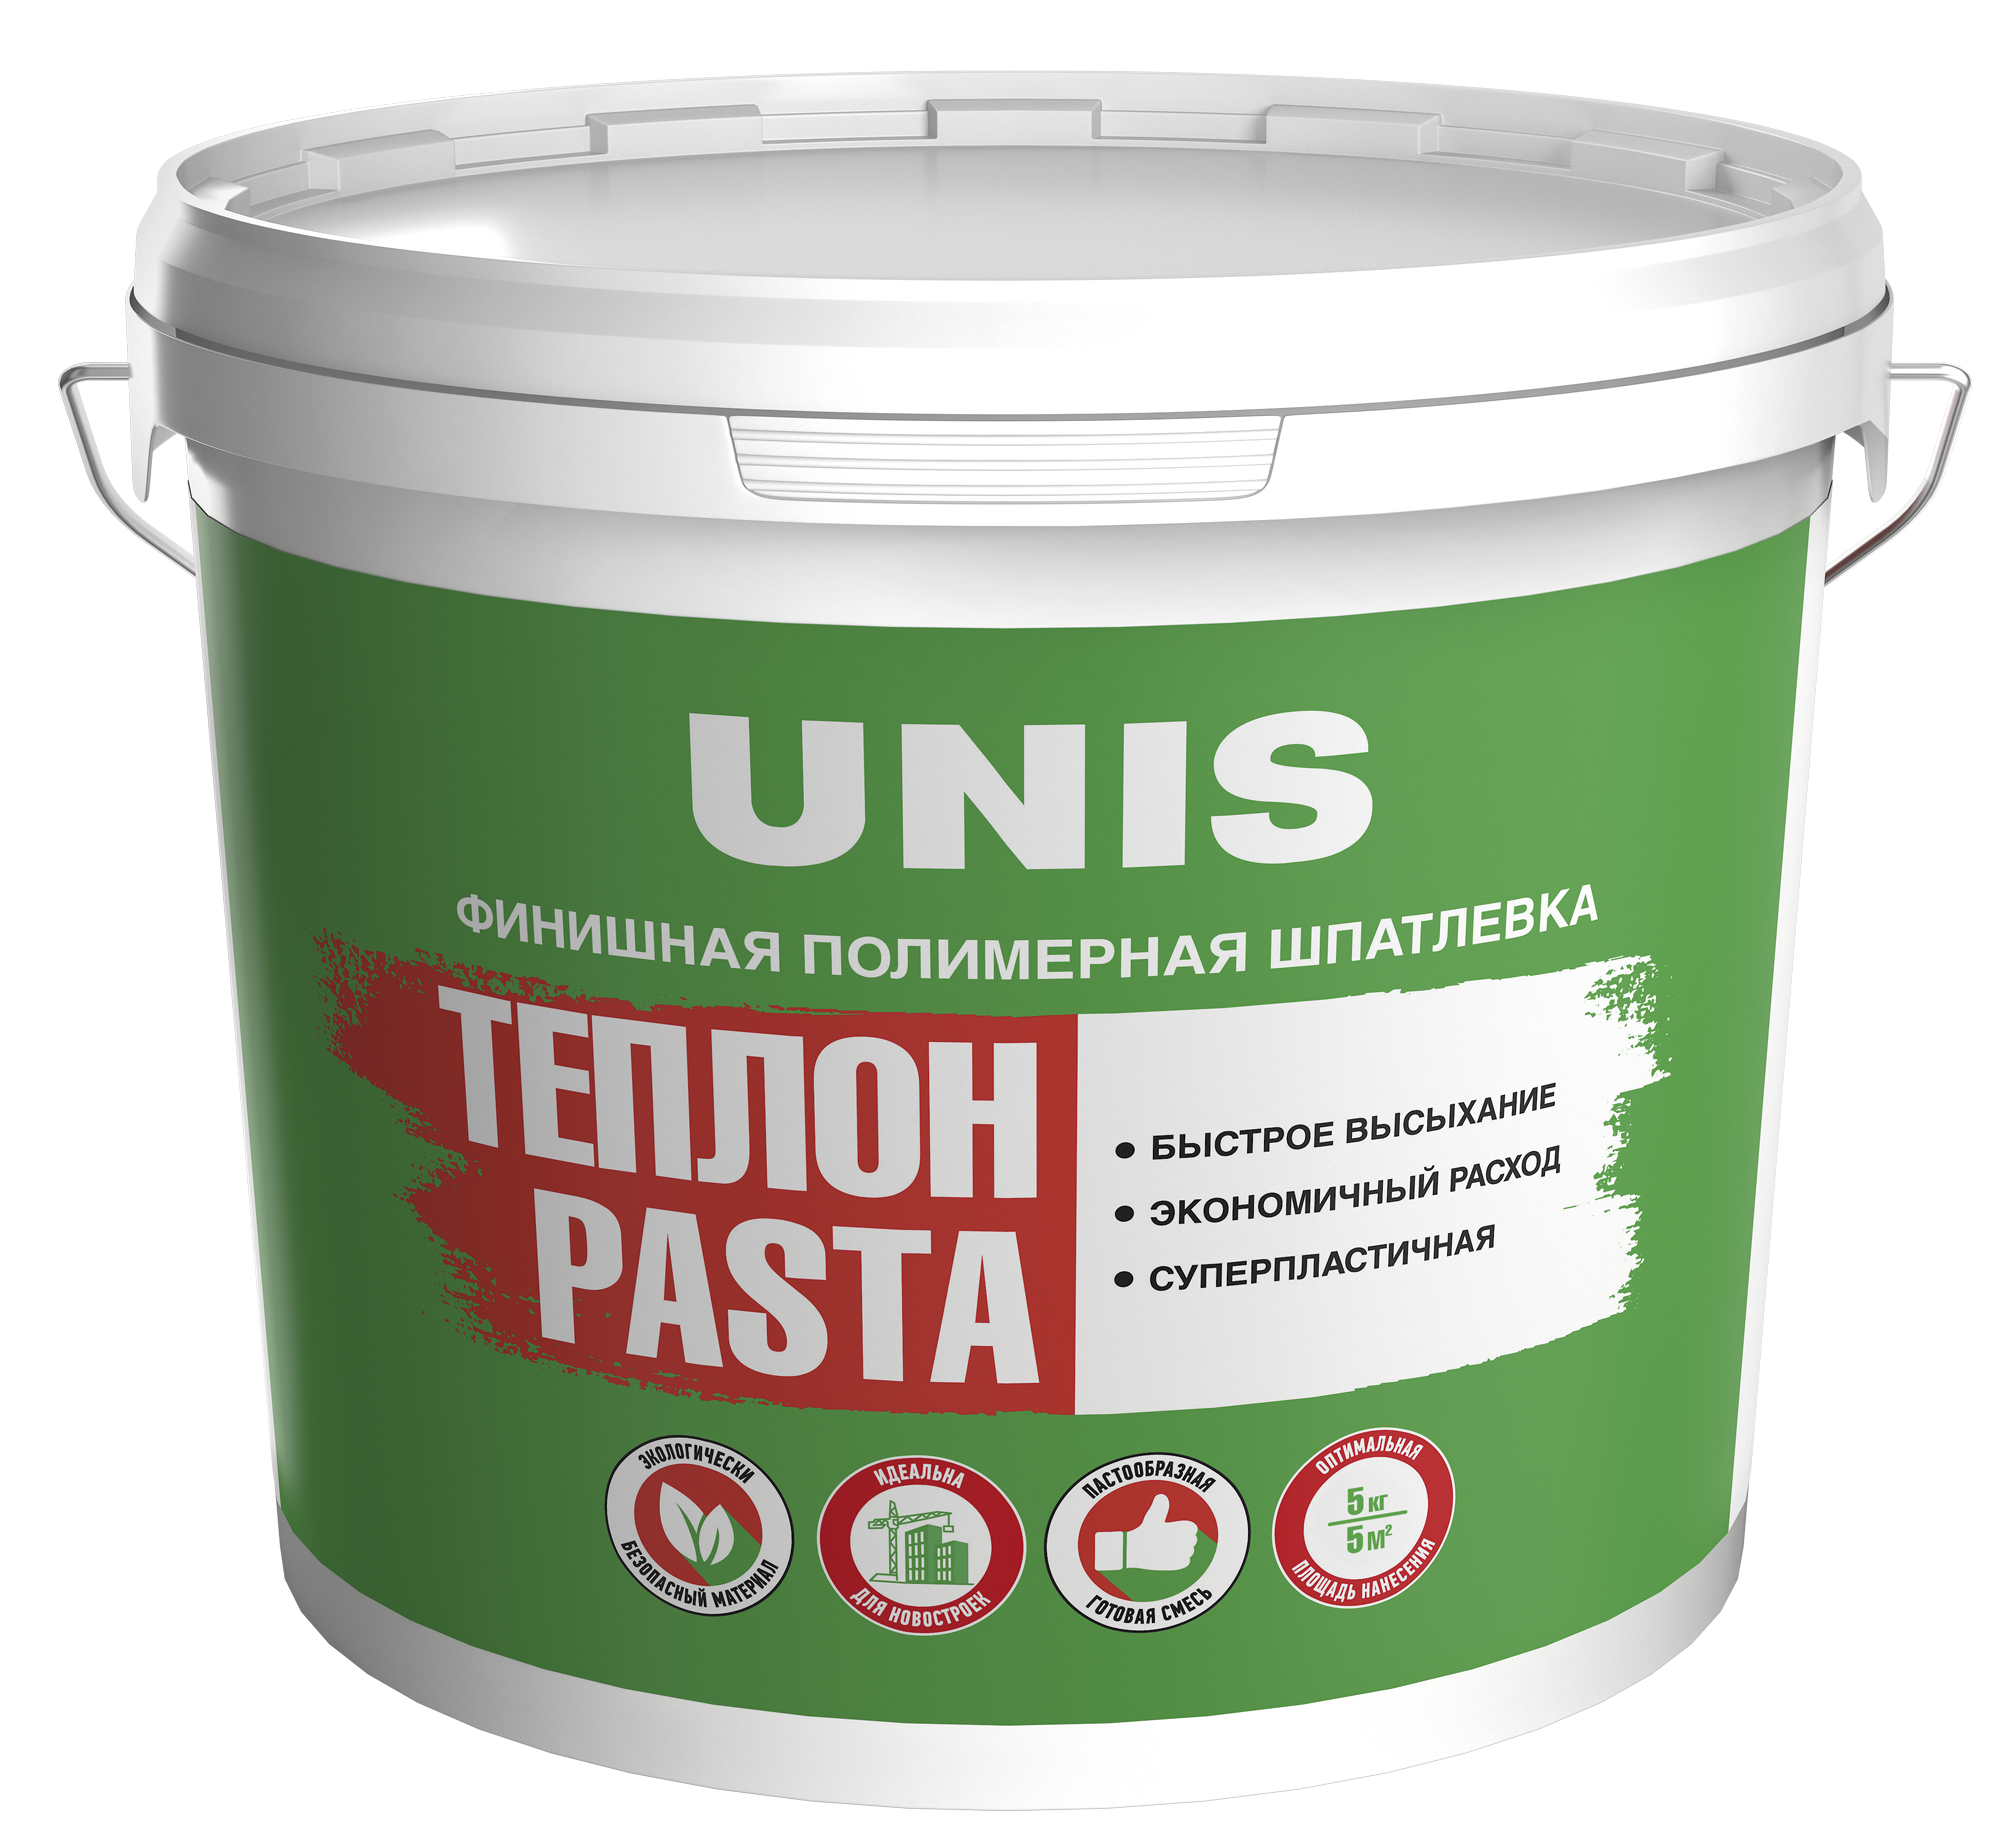 84230537 Шпатлевка полимерная финишная 5 кг Теплон Pasta STLM-0047283 UNIS